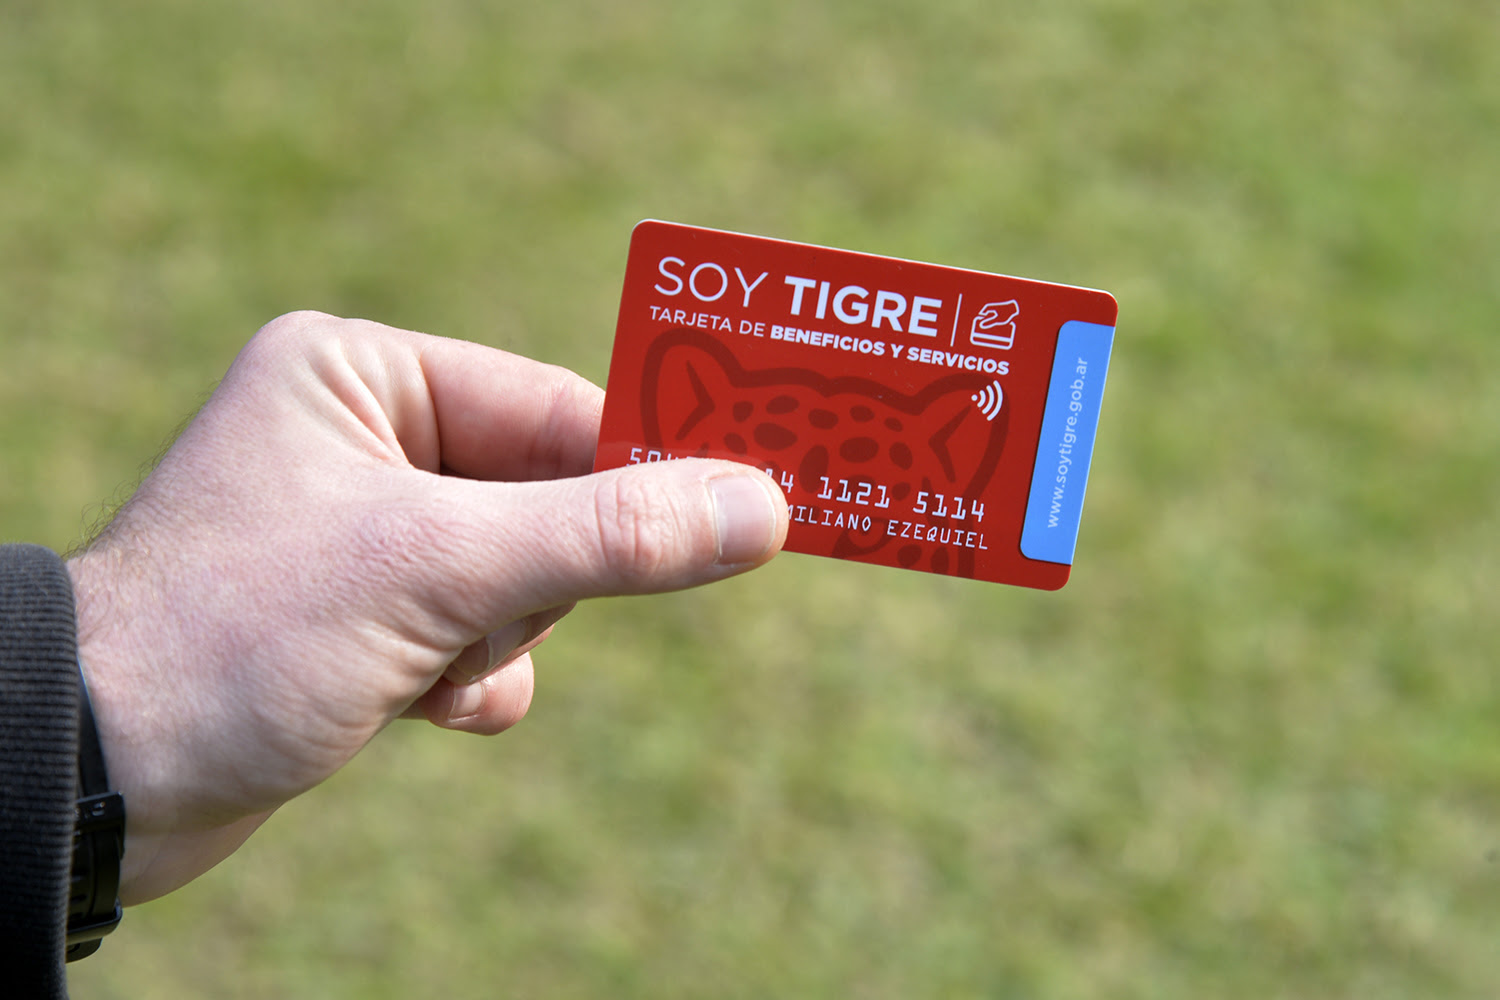  Con la tarjeta Soy Tigre, aprovecha descuentos exclusivos en comercios